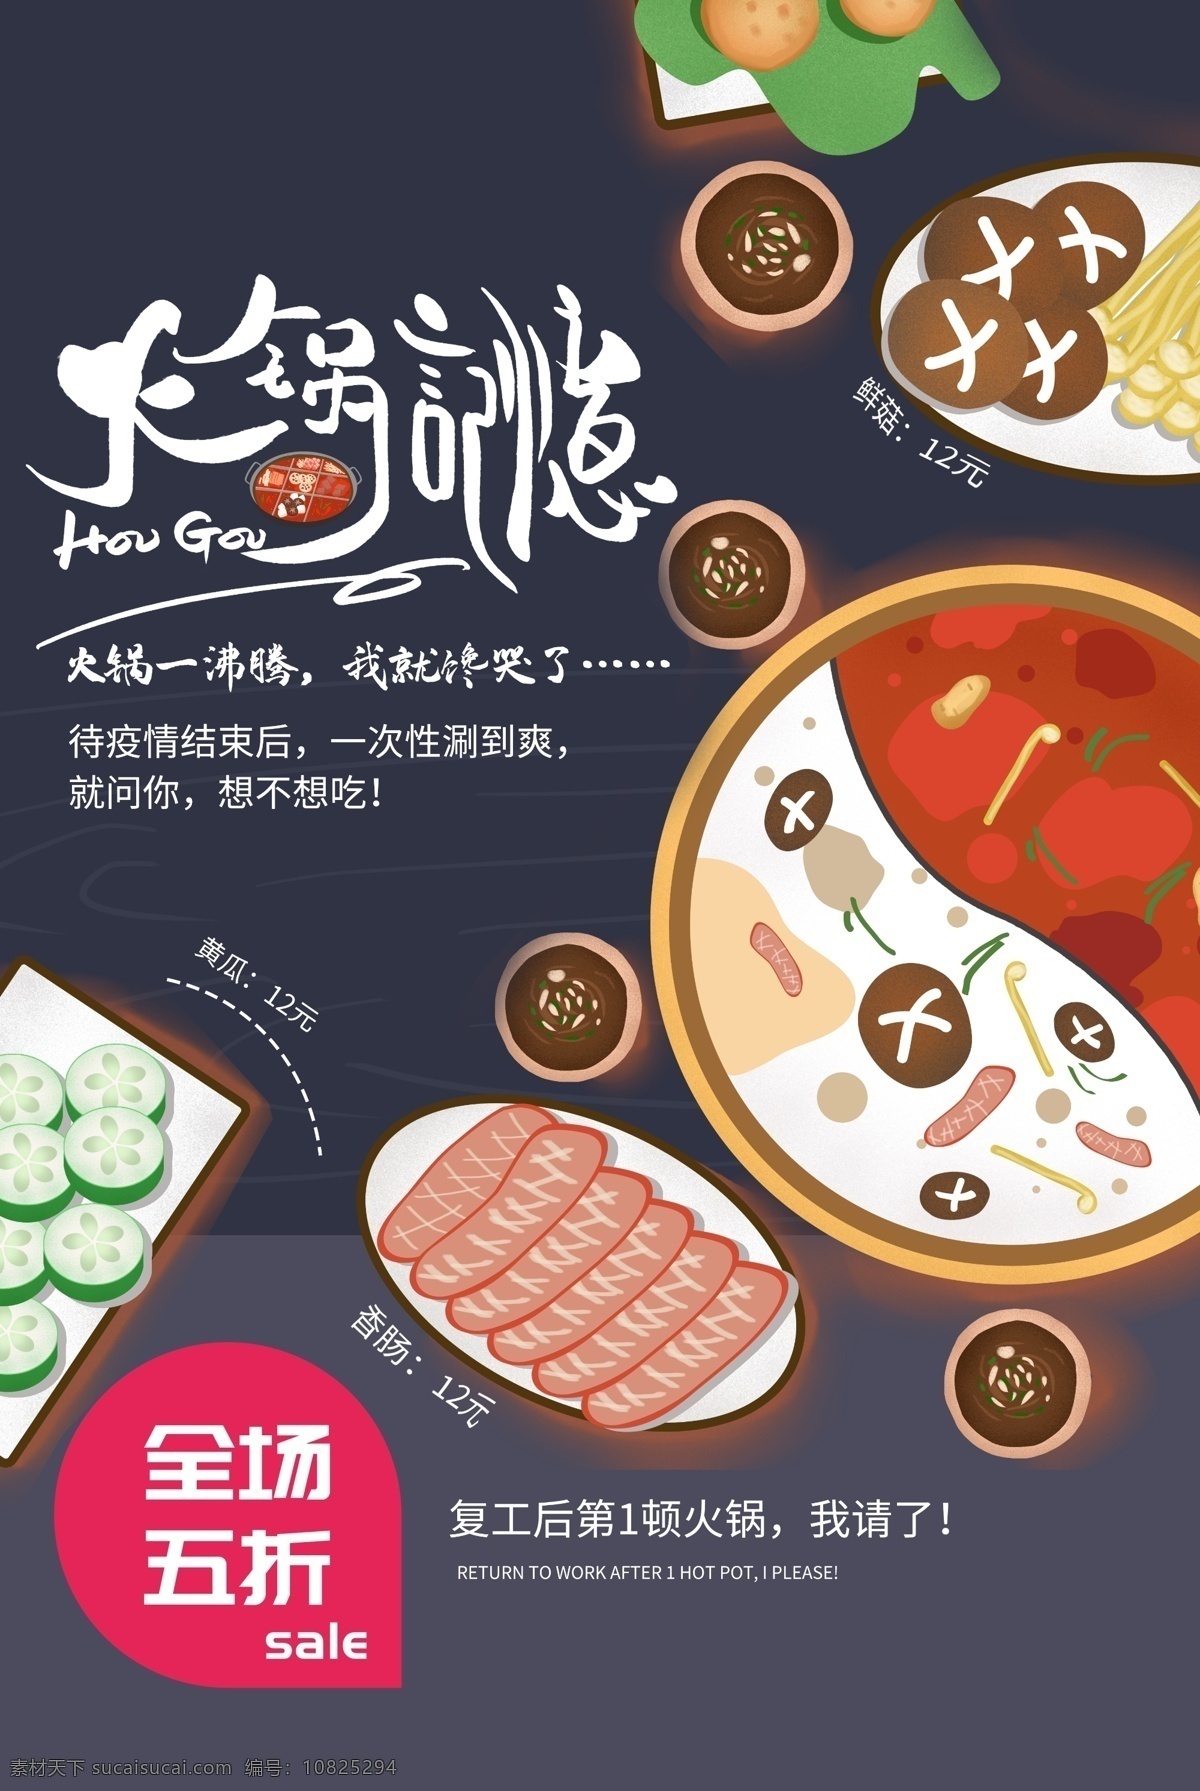 火锅 美食 食 材 活动 海报 素材图片 食材 餐饮美食 类